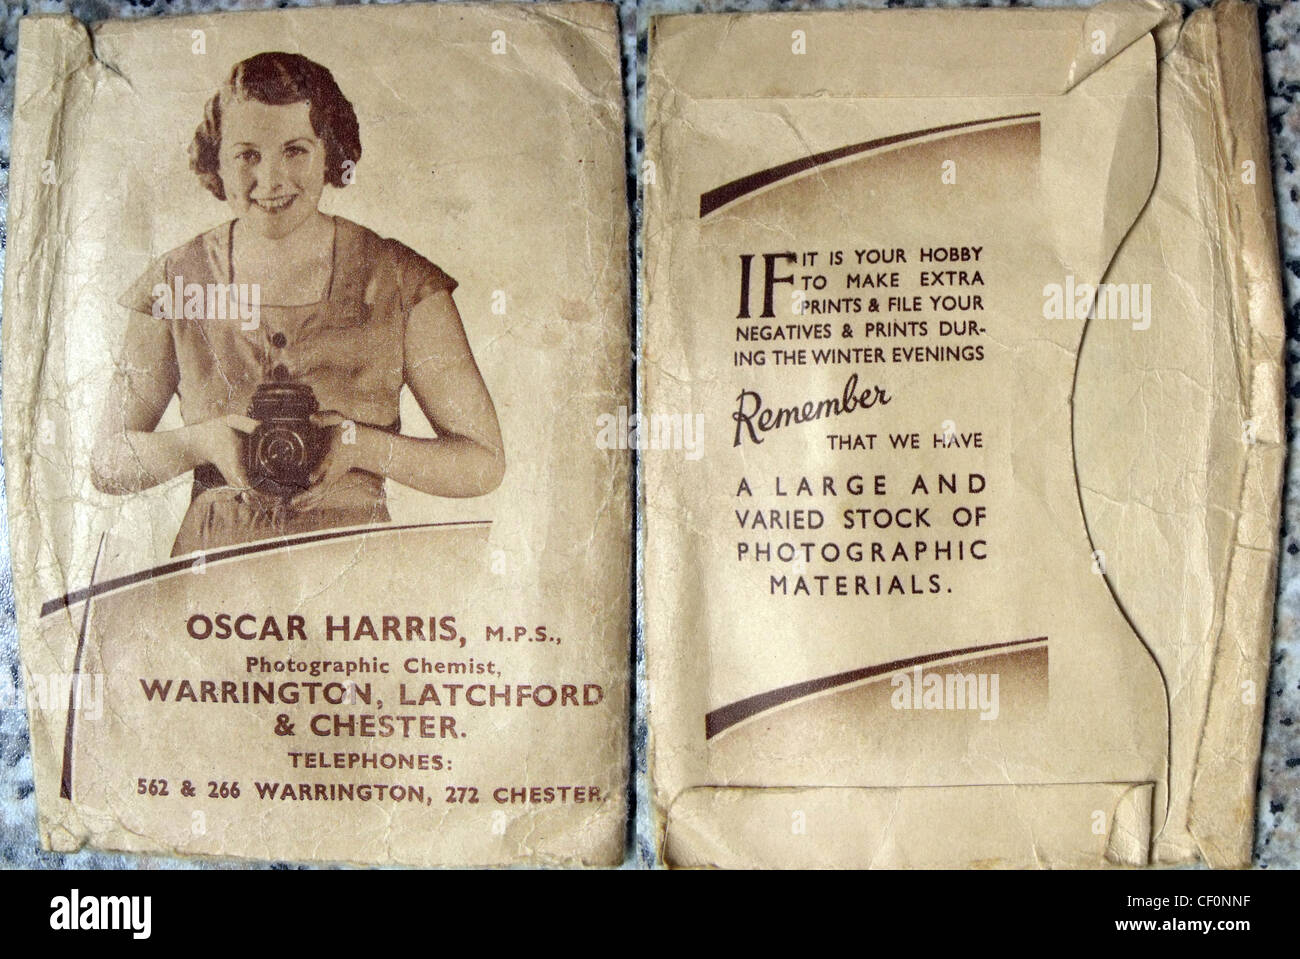 Oscar Harris Shop Film und Negative Processing Umschlag, Chemie Shop, Latchford, Warrington, Cheshire, England, Großbritannien Stockfoto